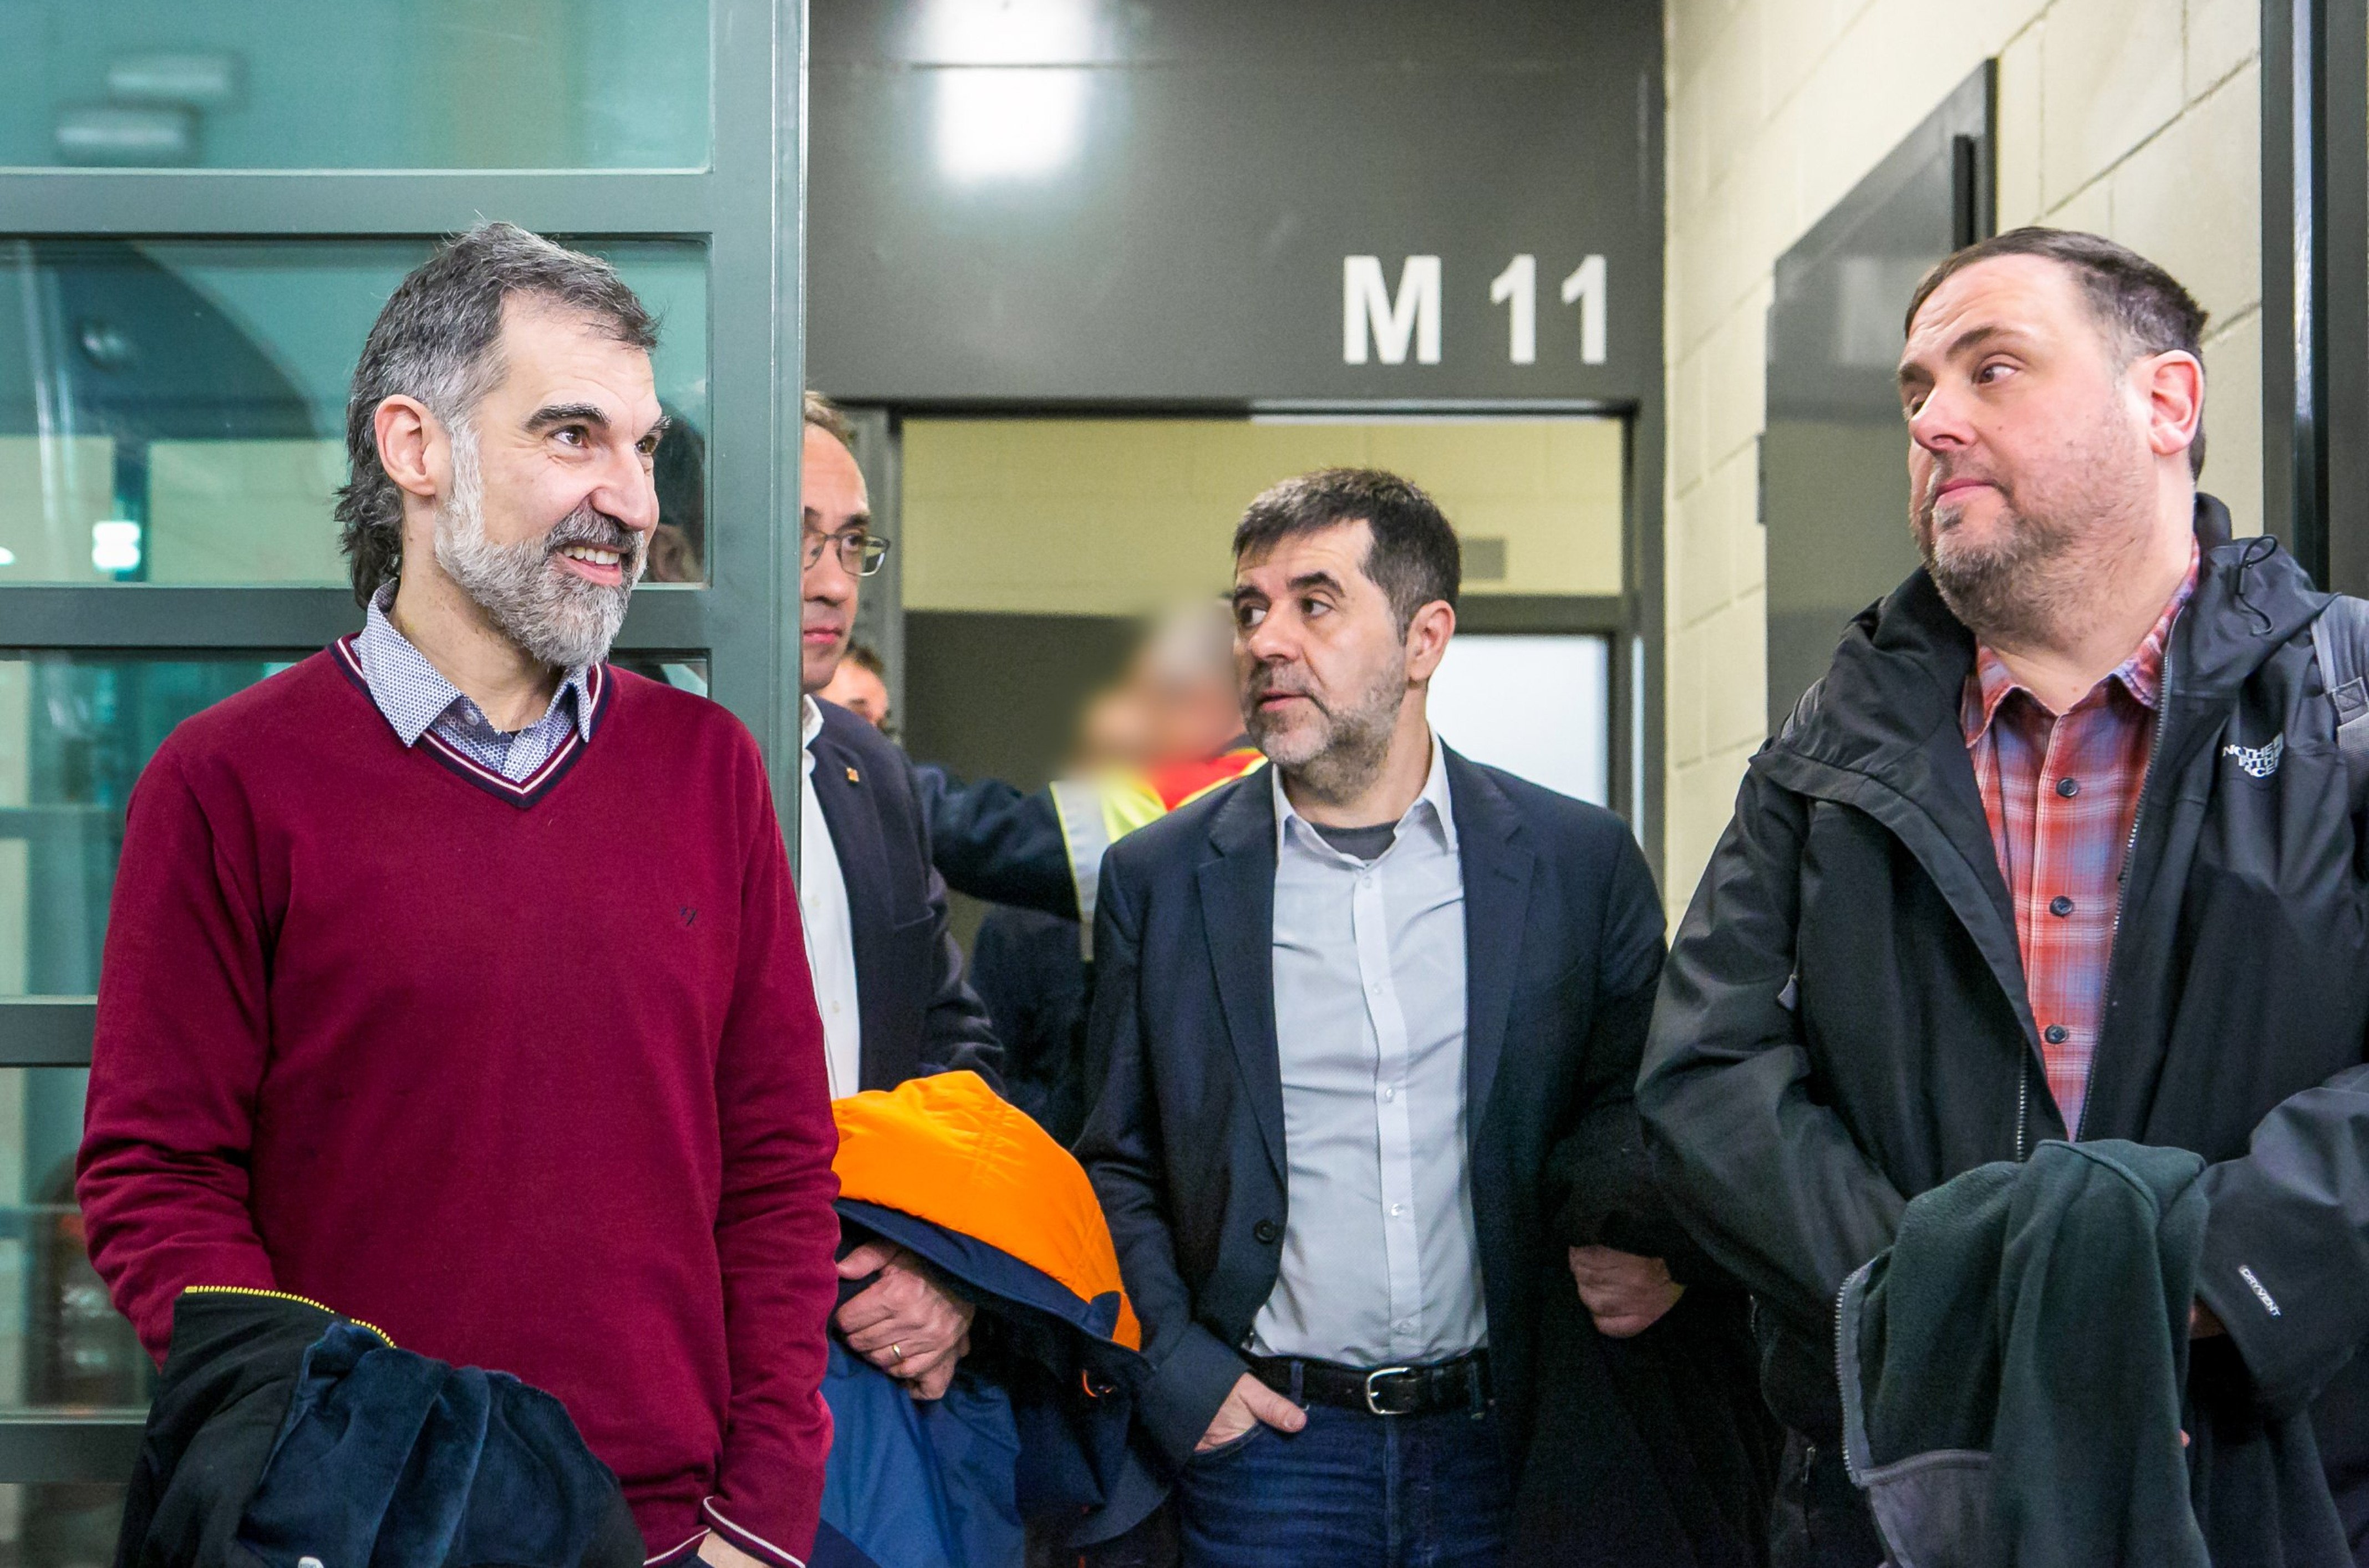 Imágenes inéditas del traslado de los presos políticos a Madrid para el juicio